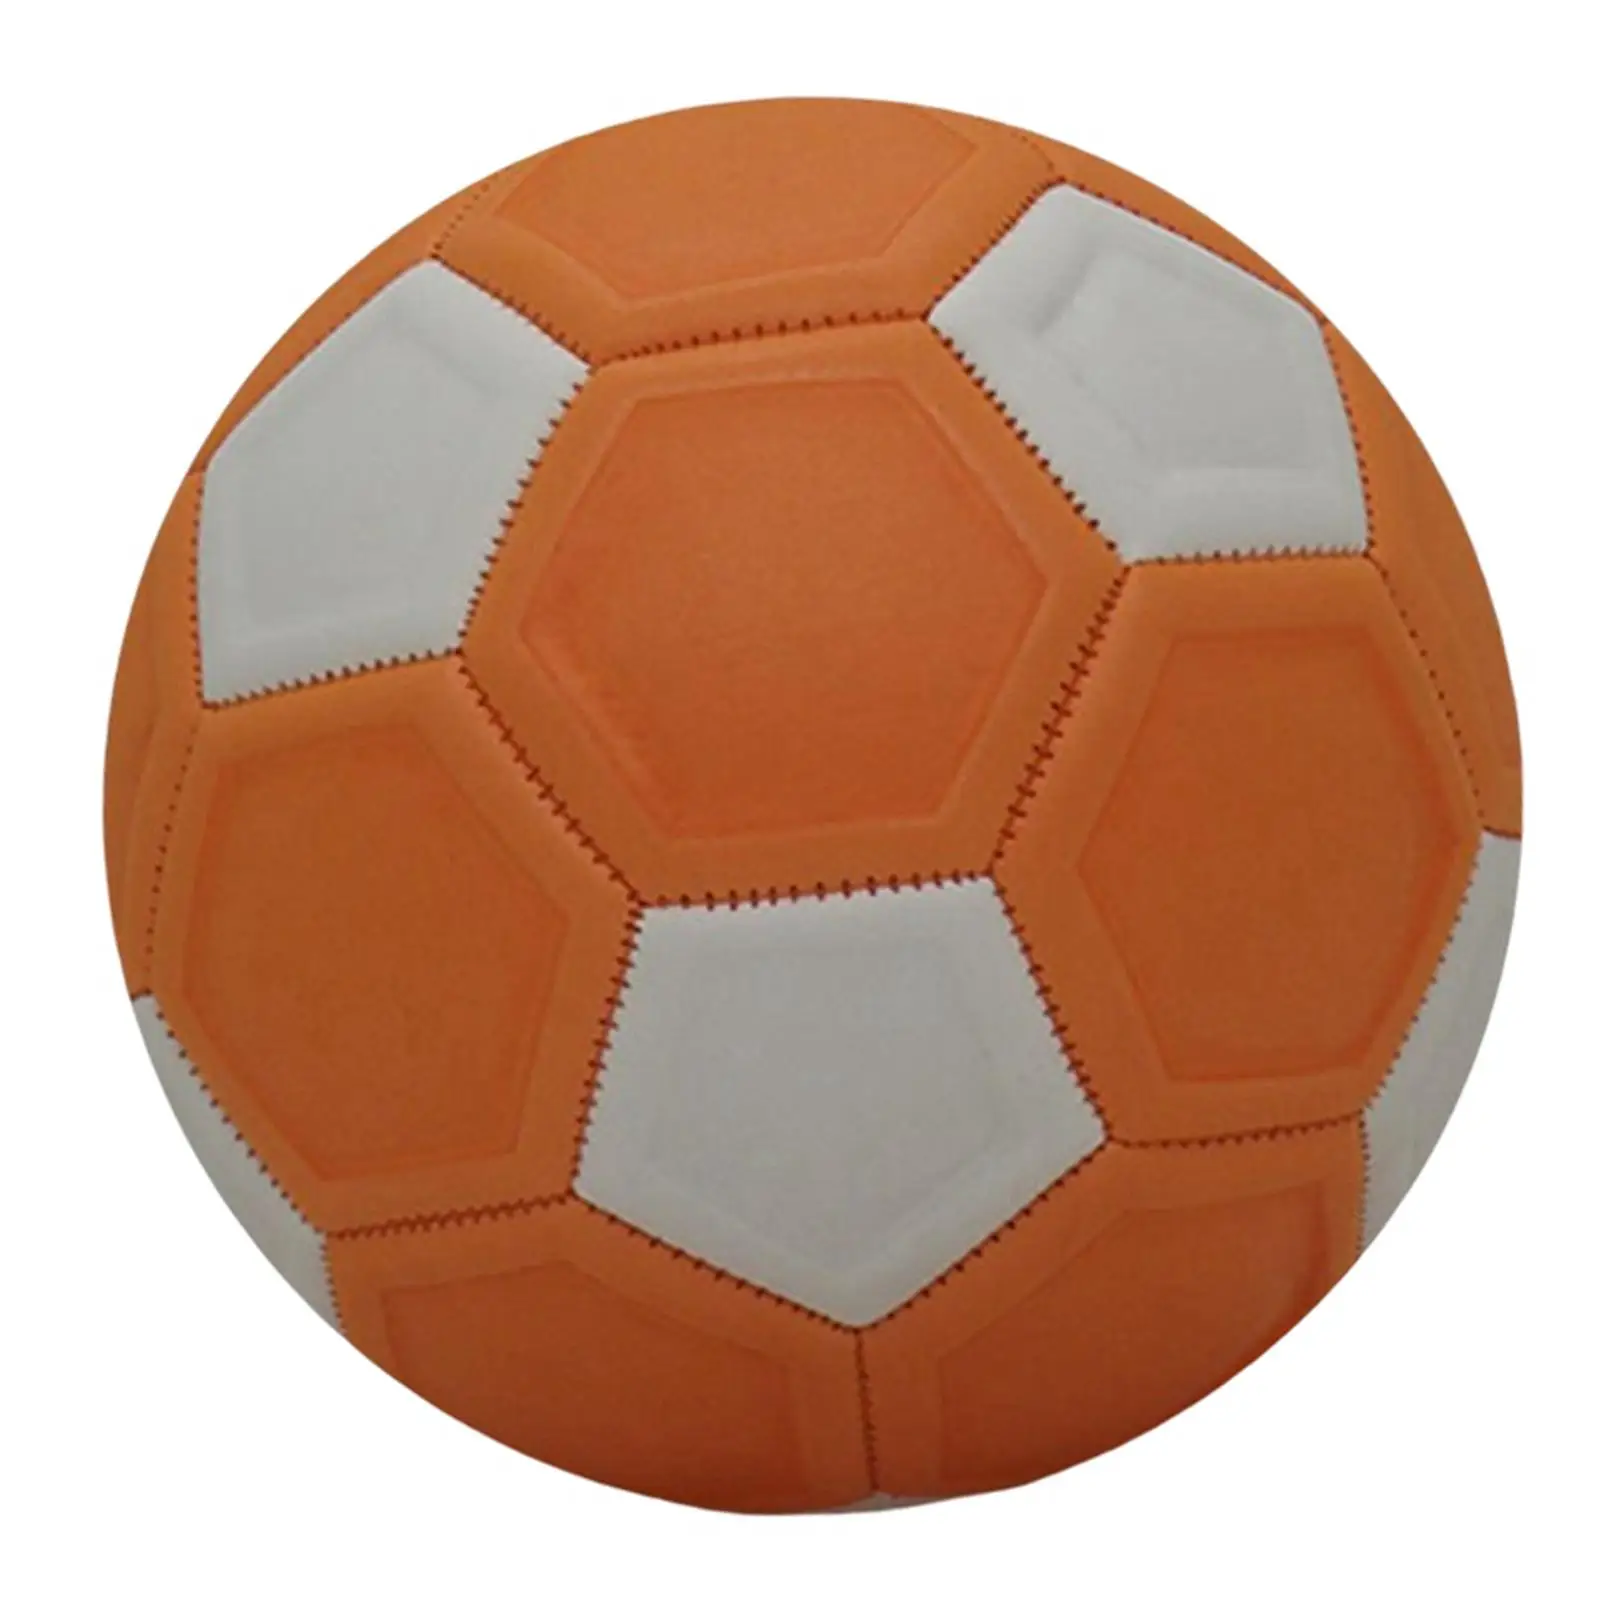 Футбольного мяча официального размера, тренировочный мяч в подарок на день рождения